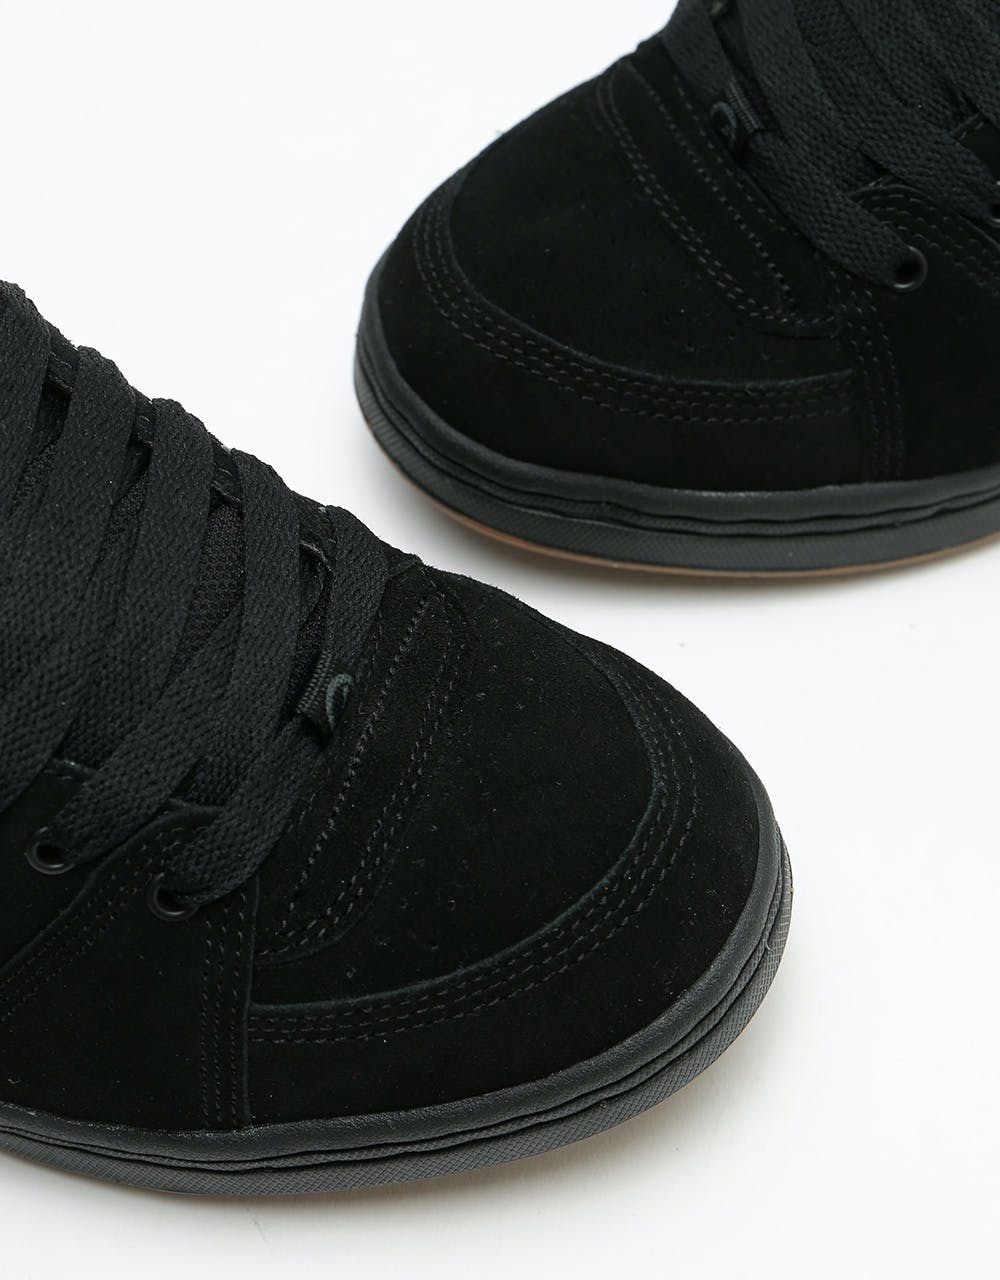 éS Accel OG Skate Shoes - Black